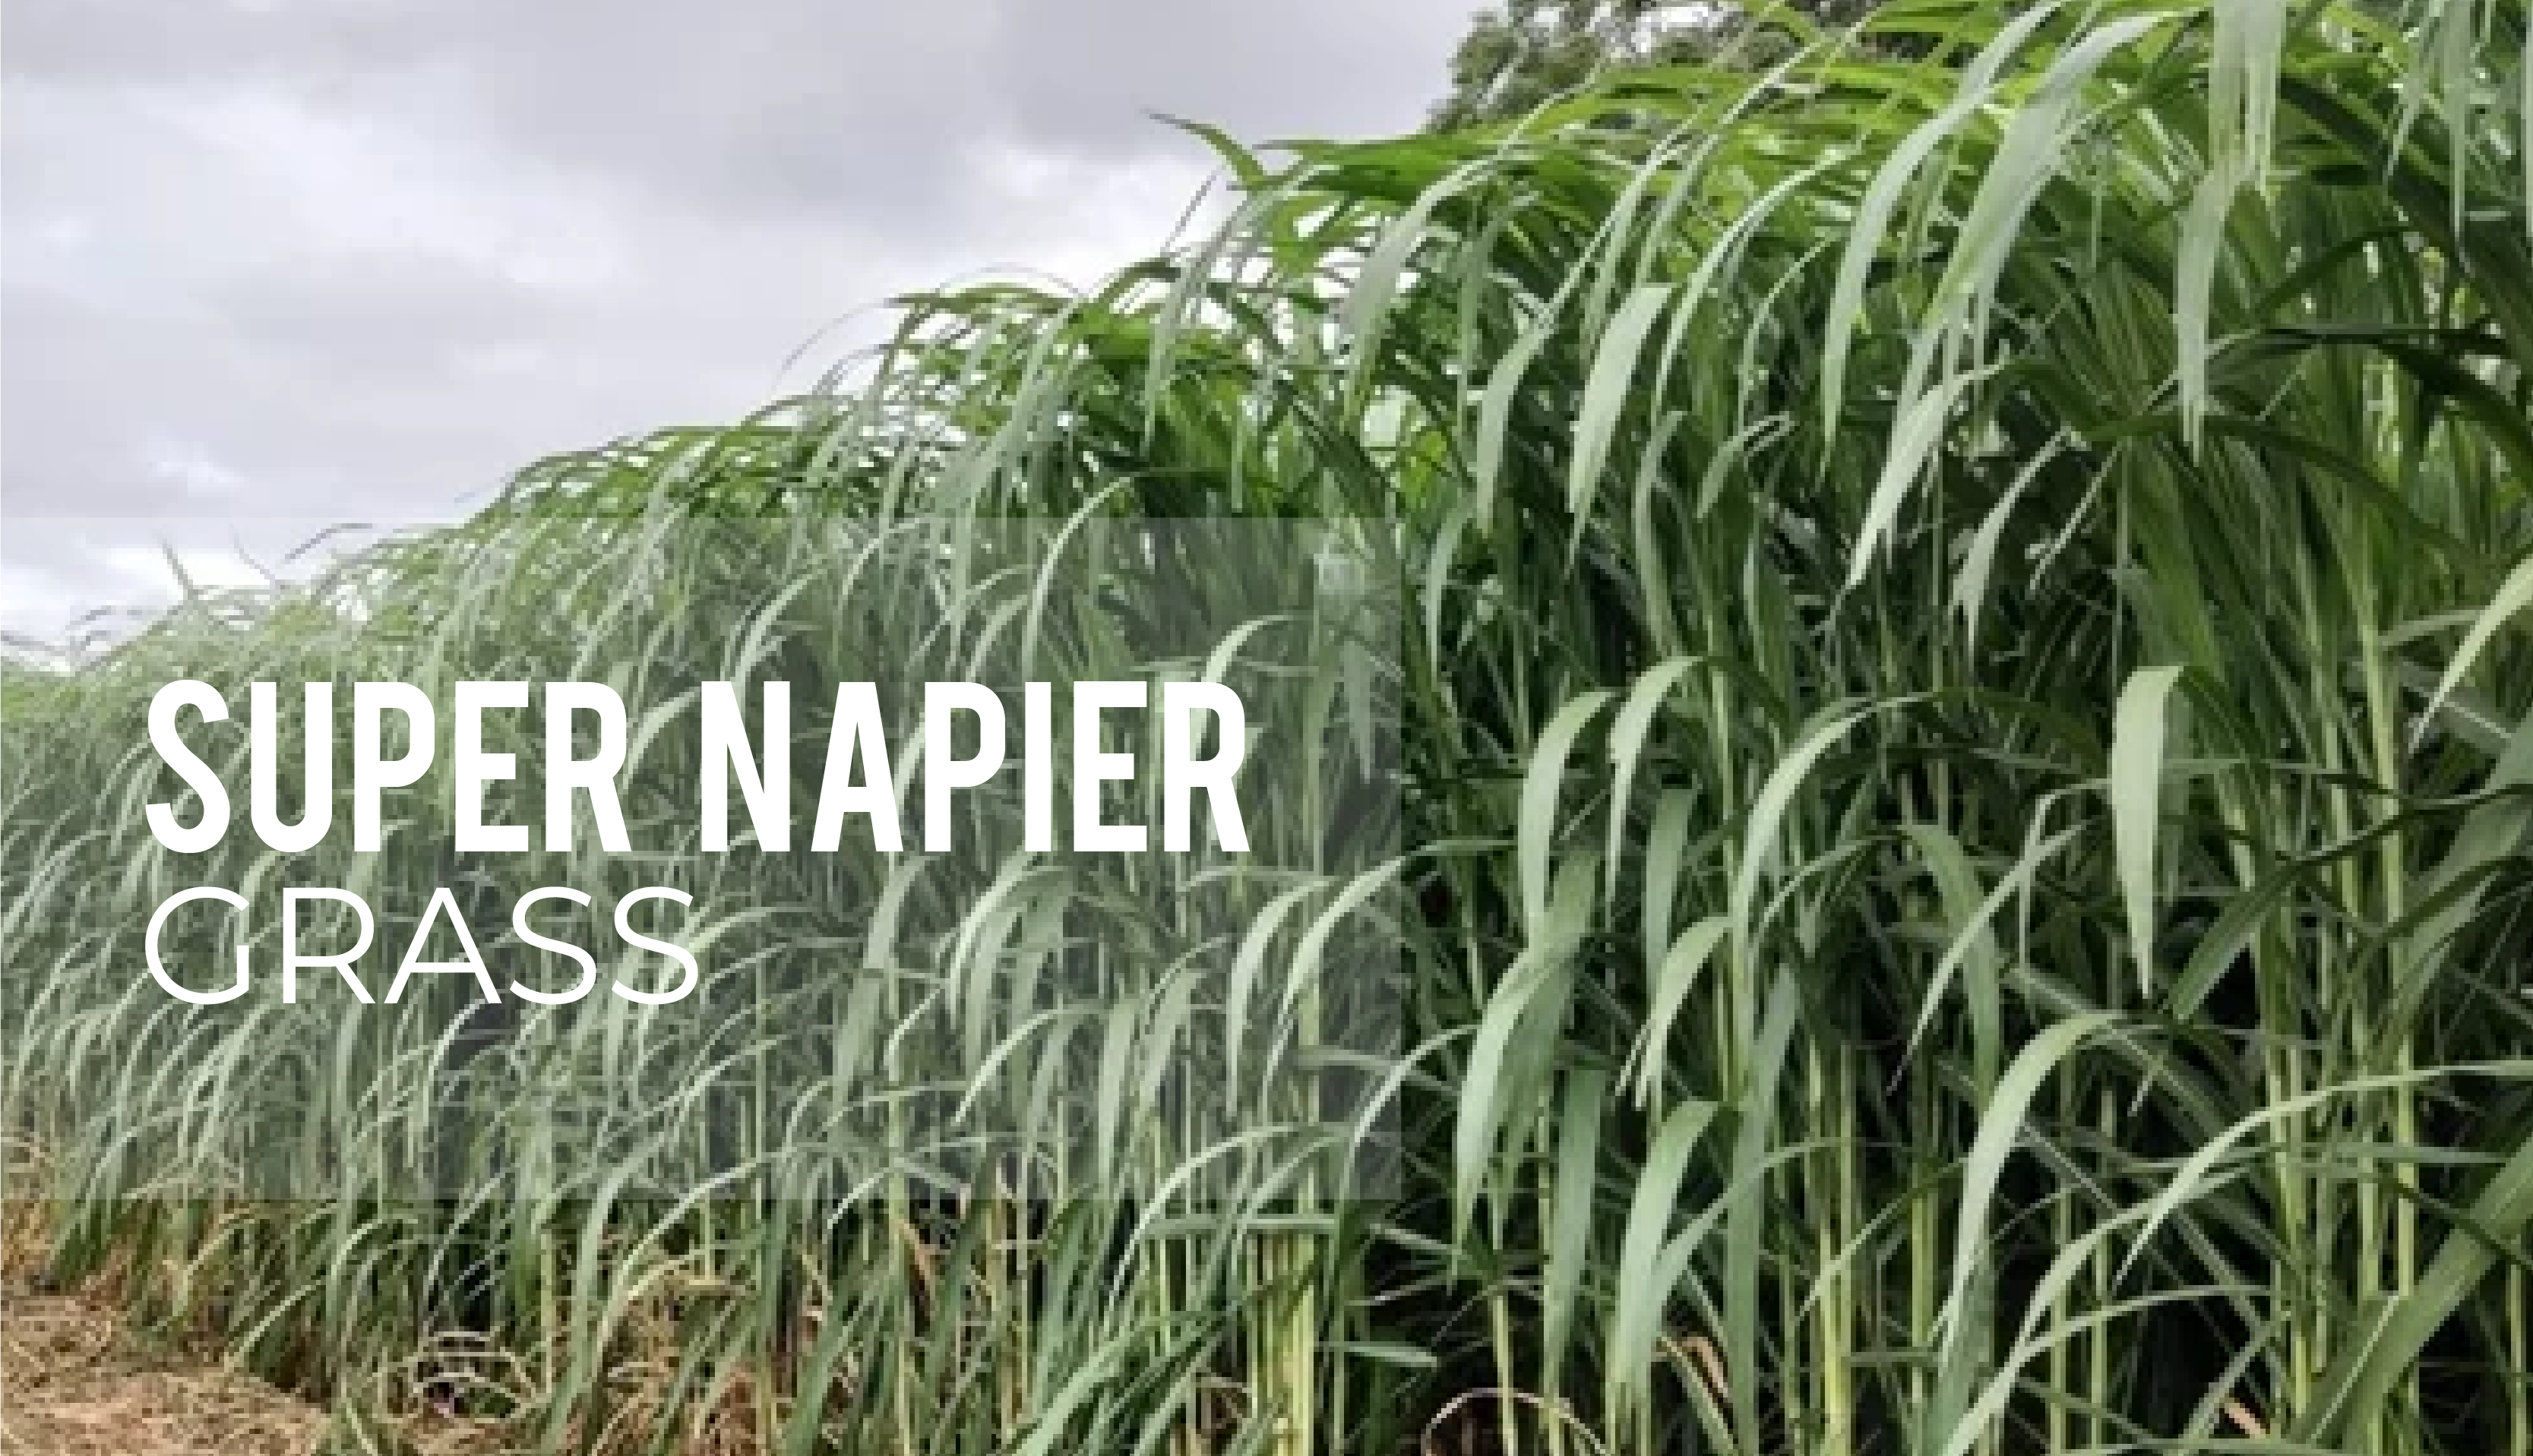 How to plant Super Napier grass